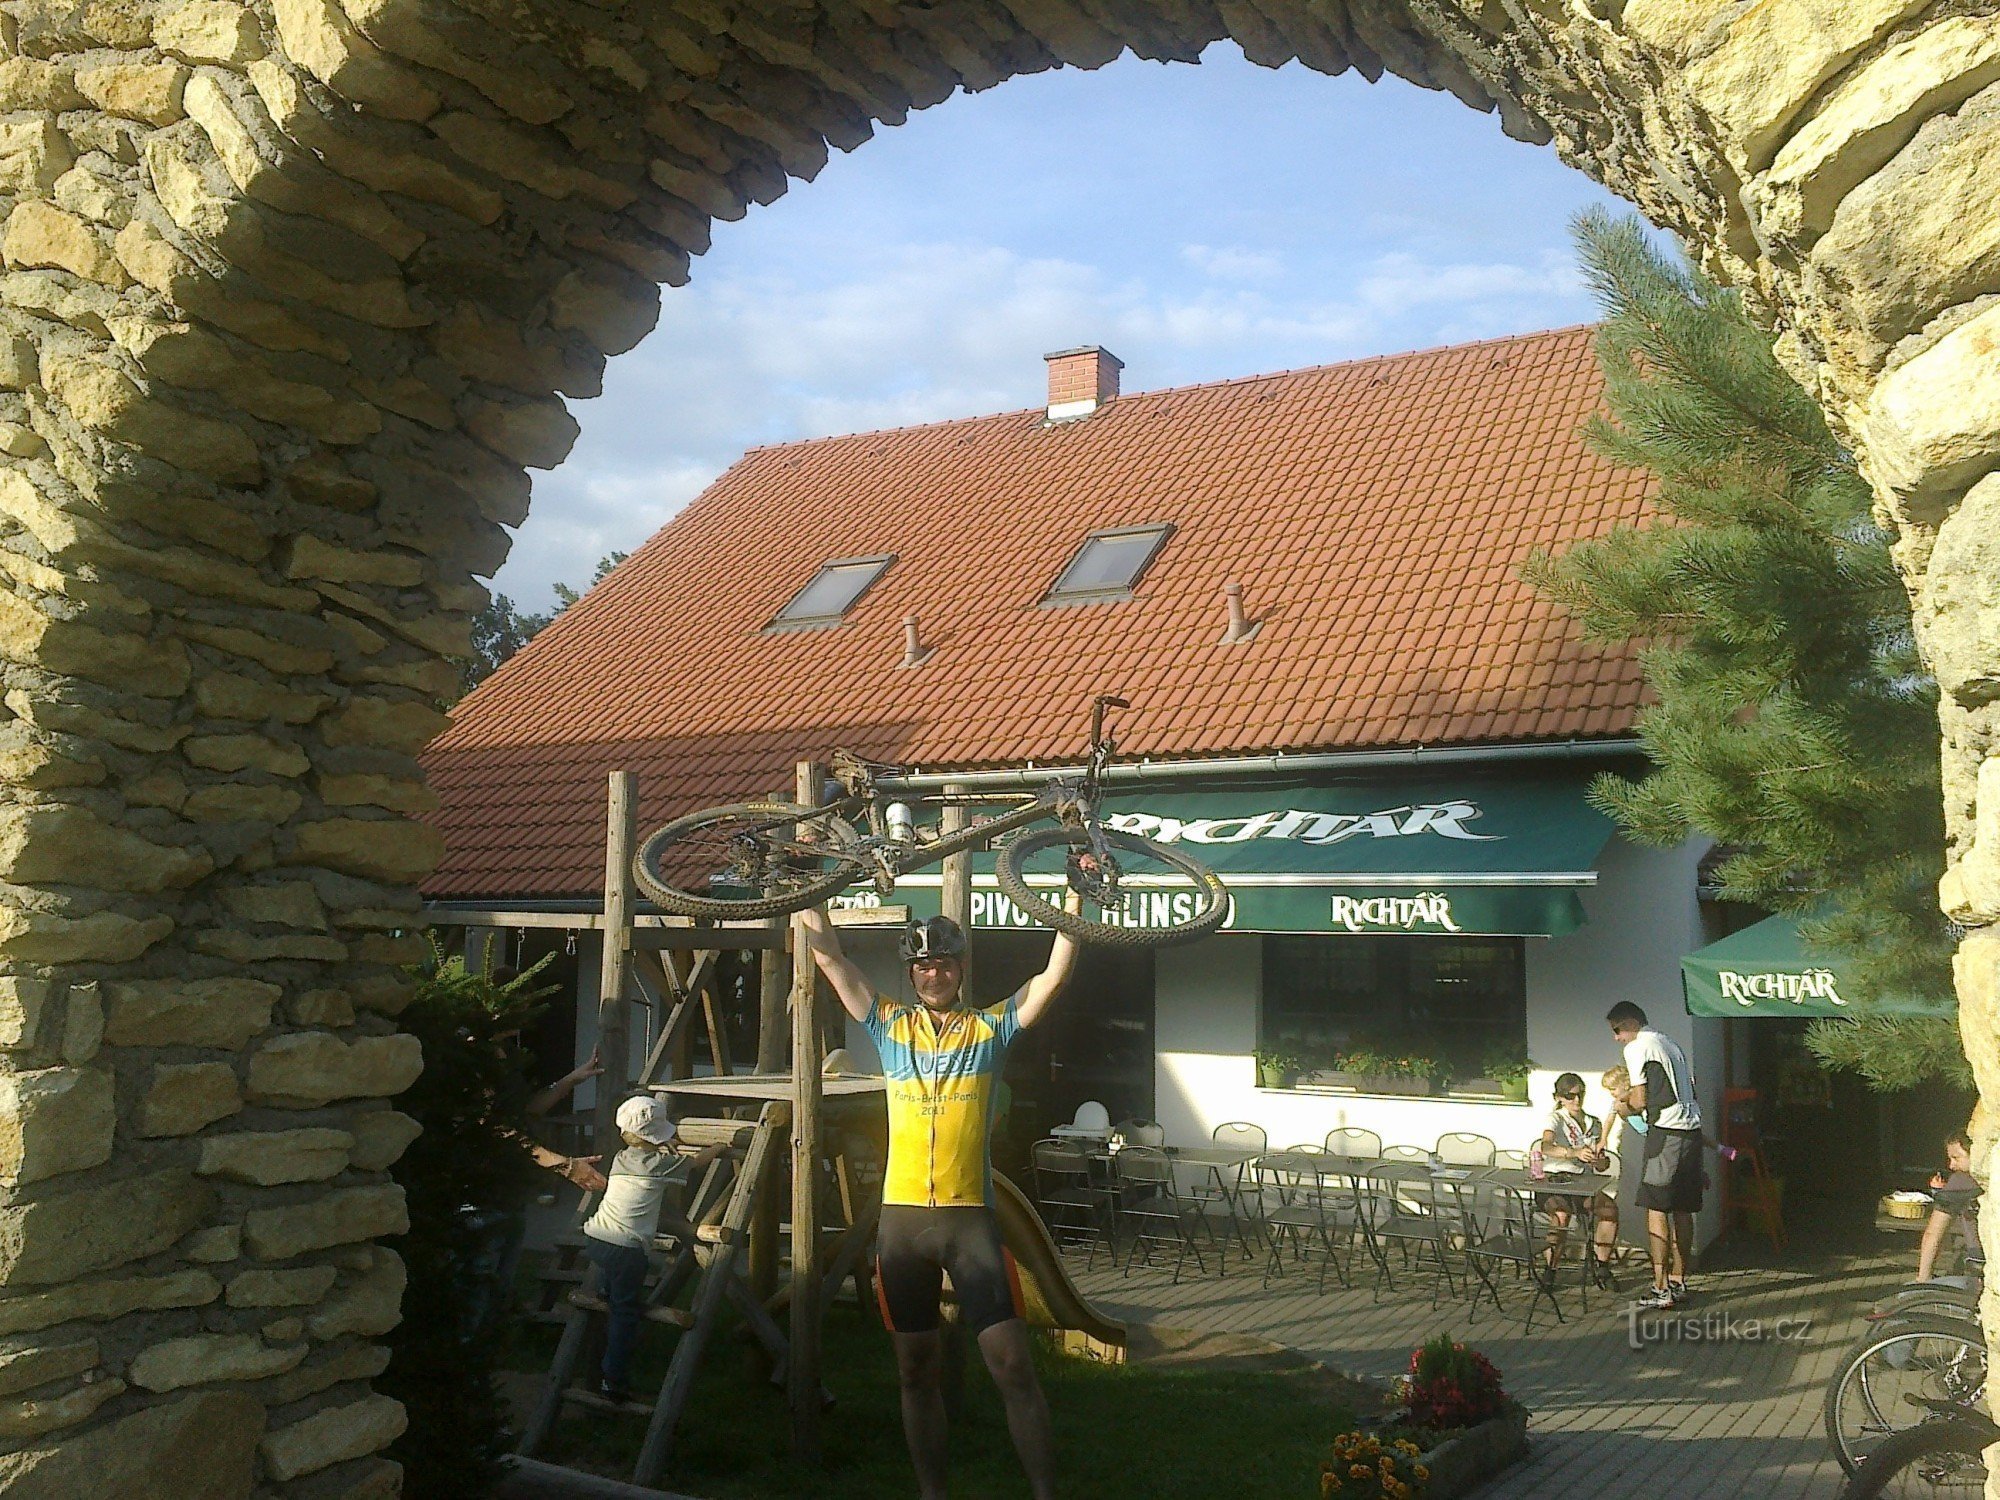 Pelestrovská pub - en oase for cyklister og langrendsløbere